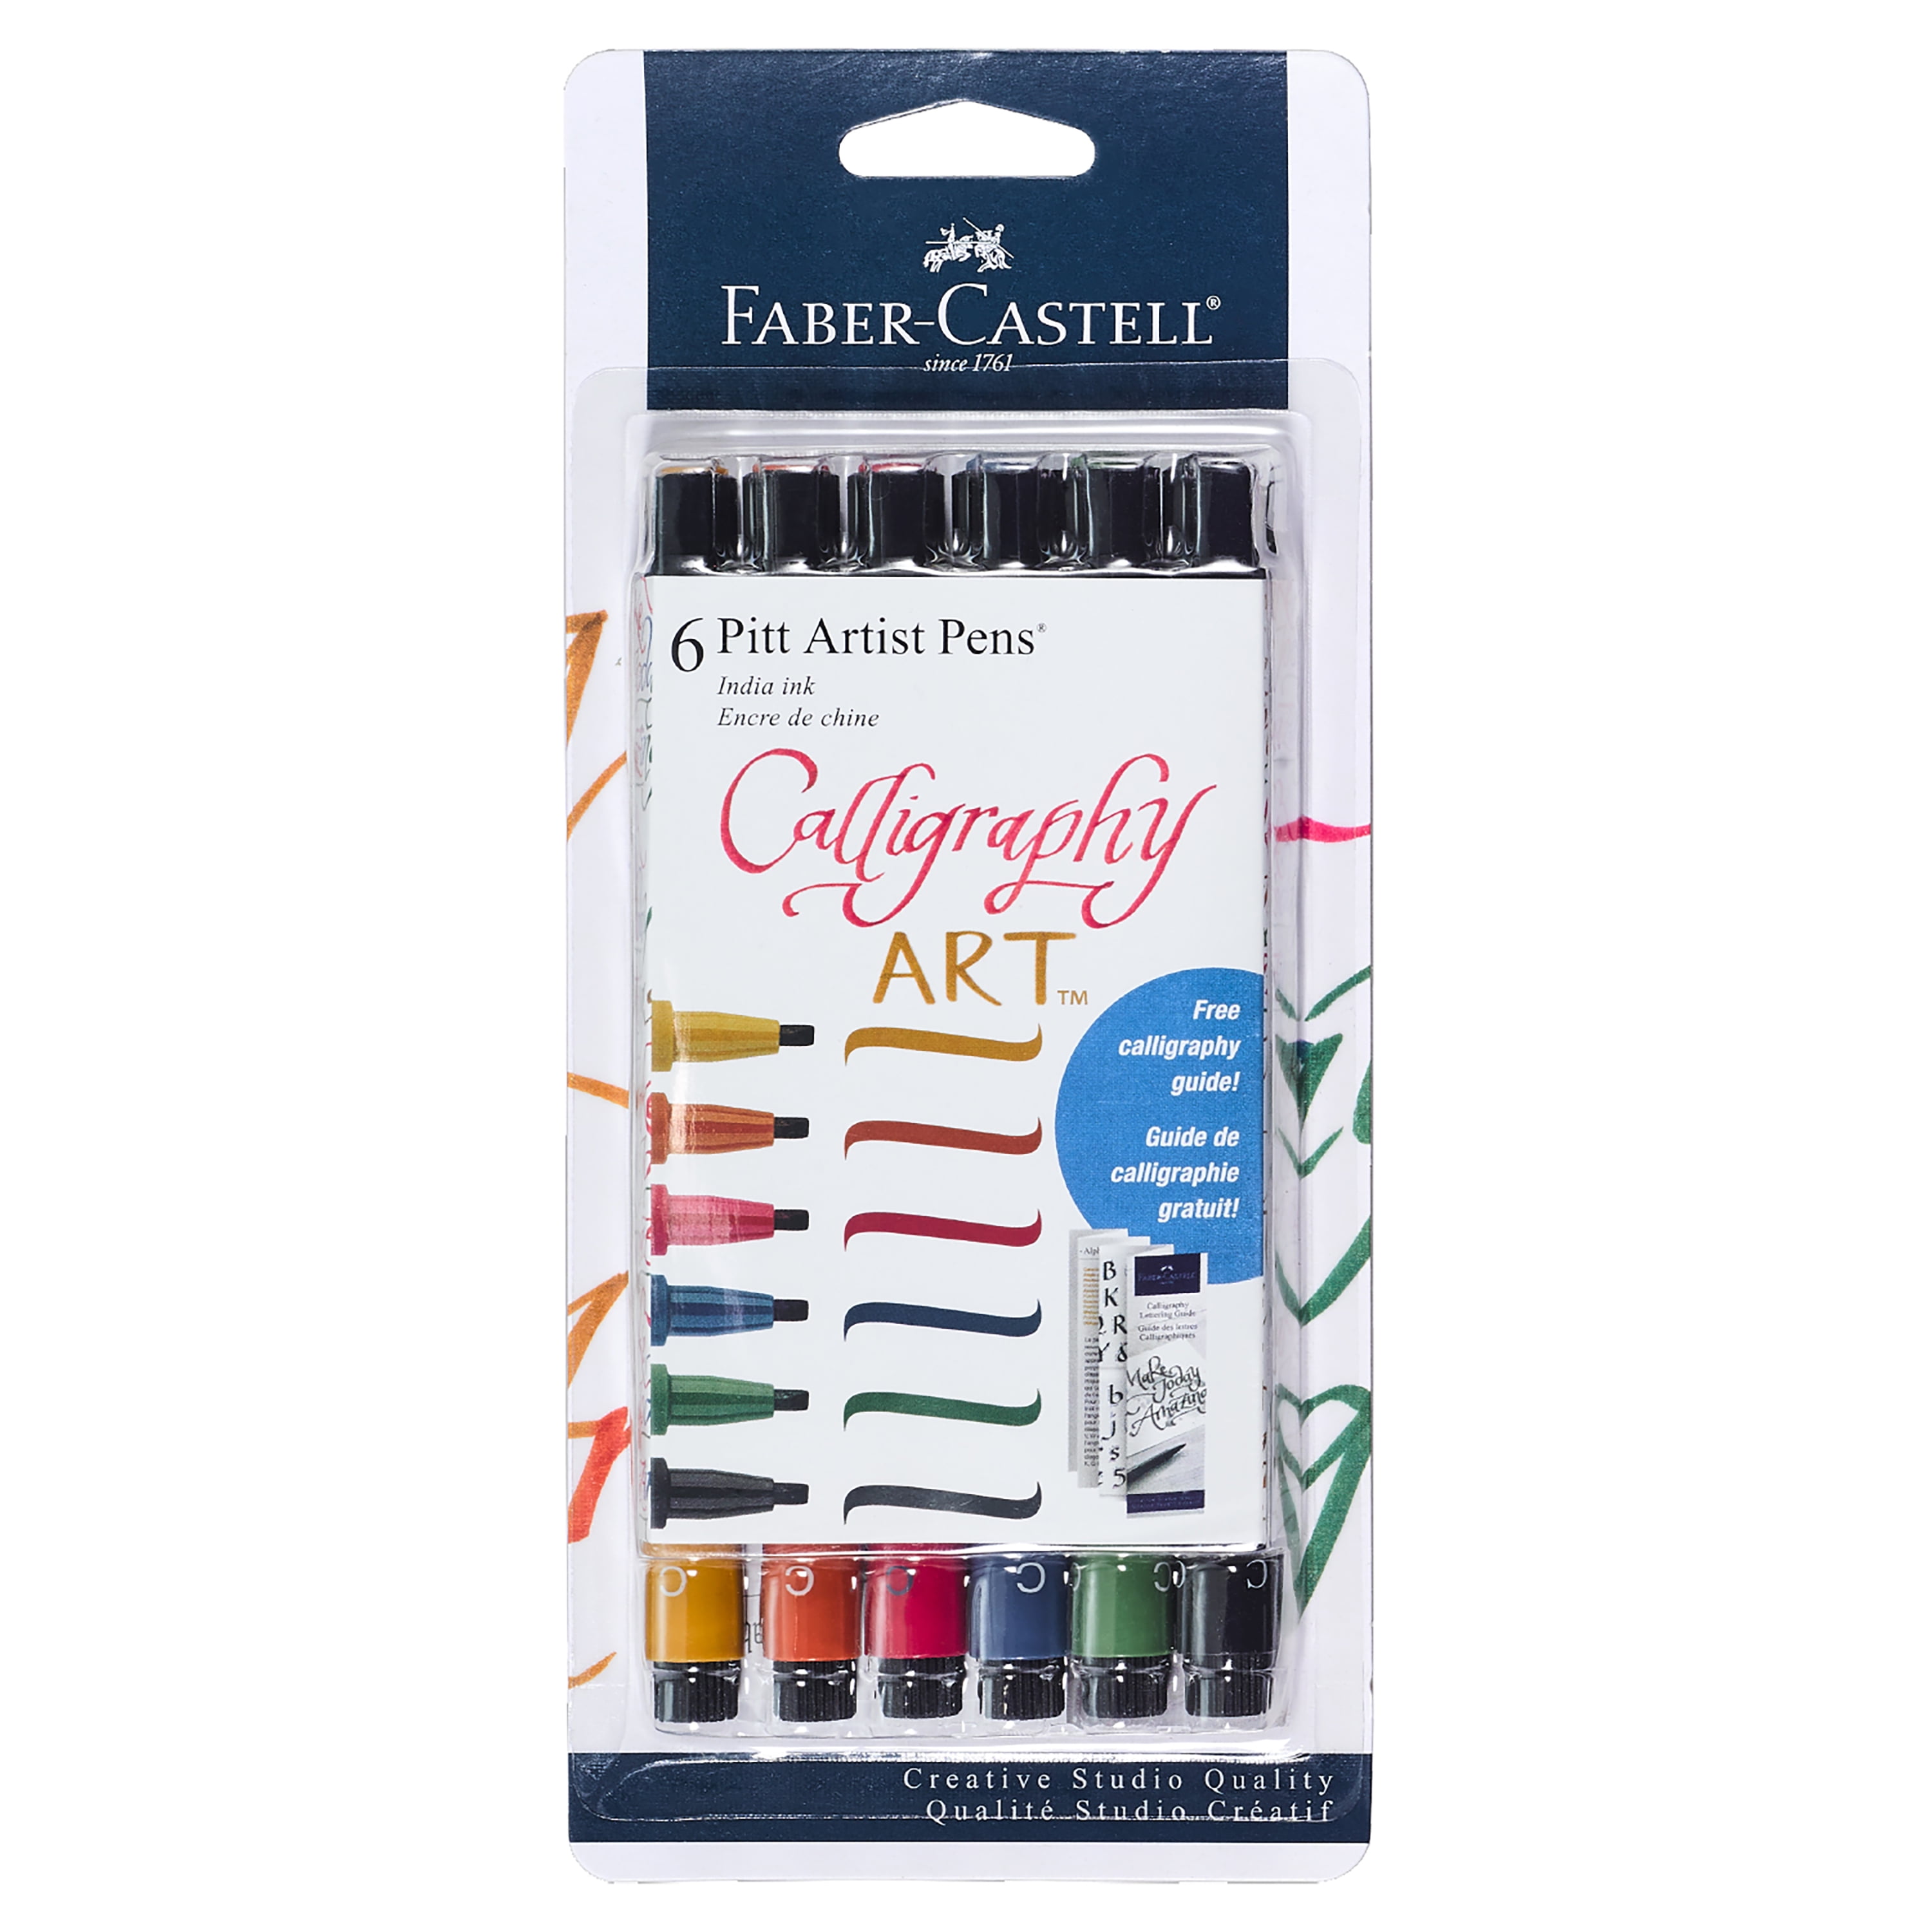 Faber-Castell PITT Artist Brush 6-set Basic